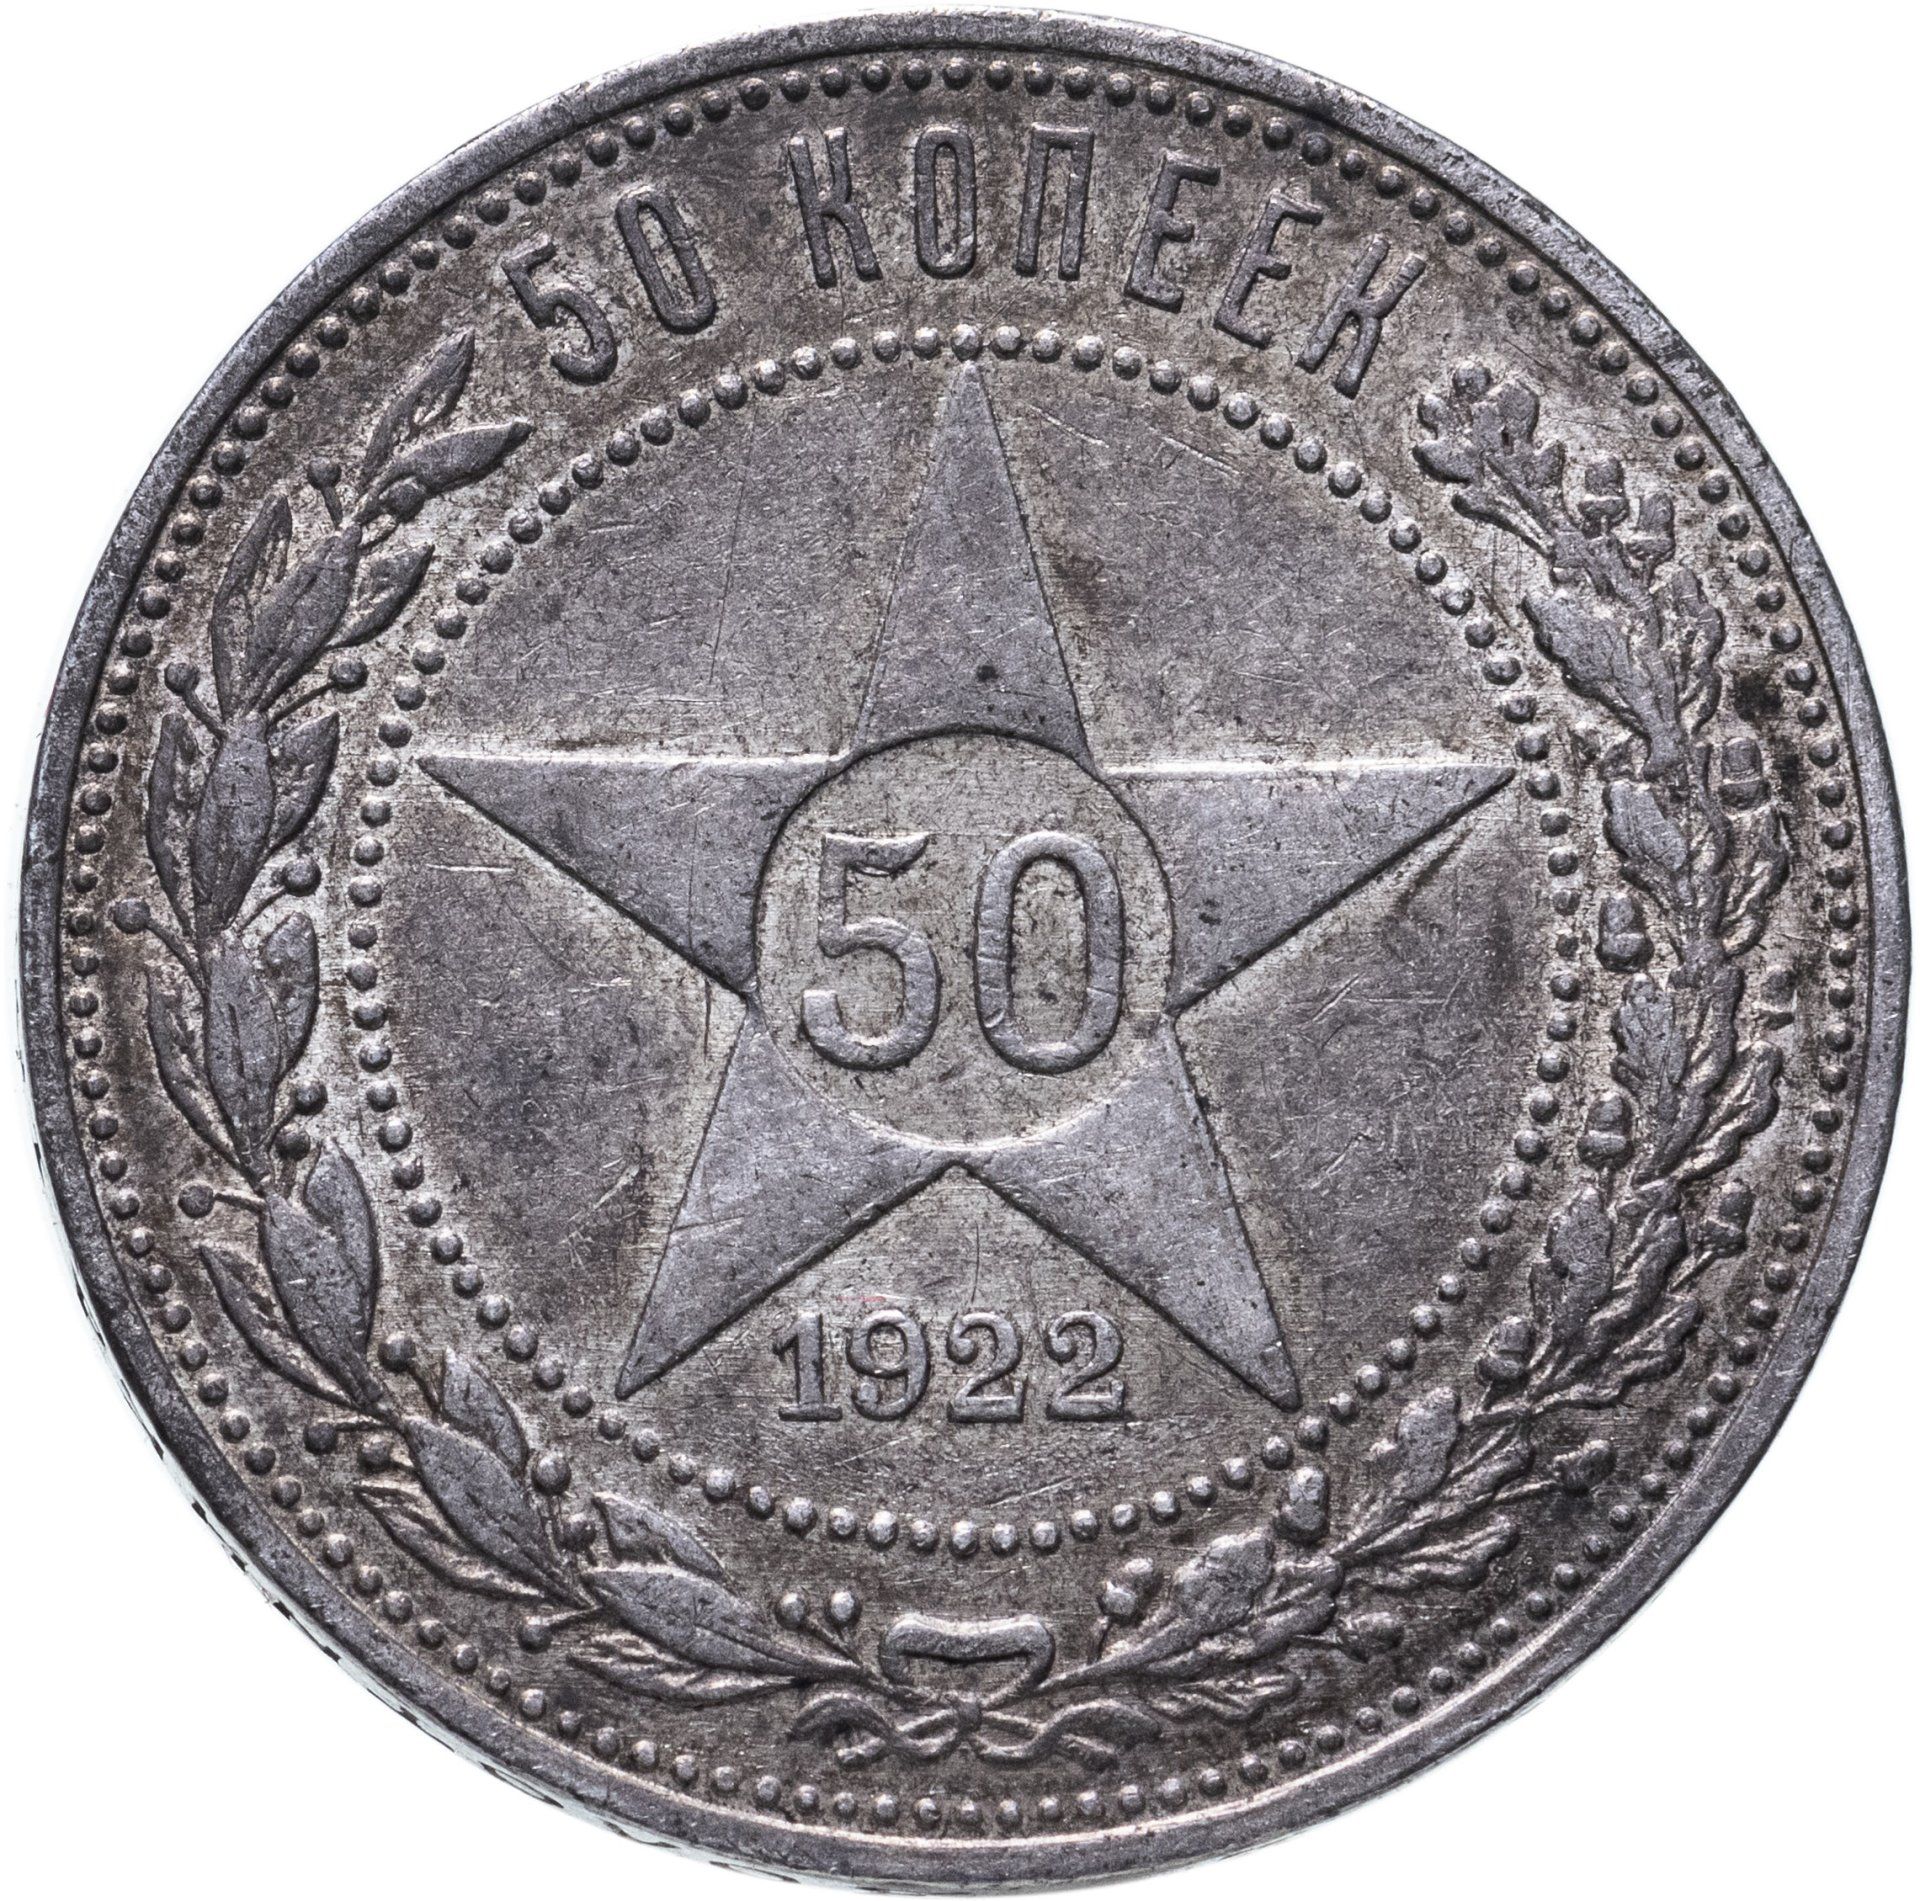 50 копеек 1922 года серебро. 50 Копеек 1922. 50 Коп 1922 г АГ MS. 1 Рубль 1922. Алюминиевые монеты СССР.